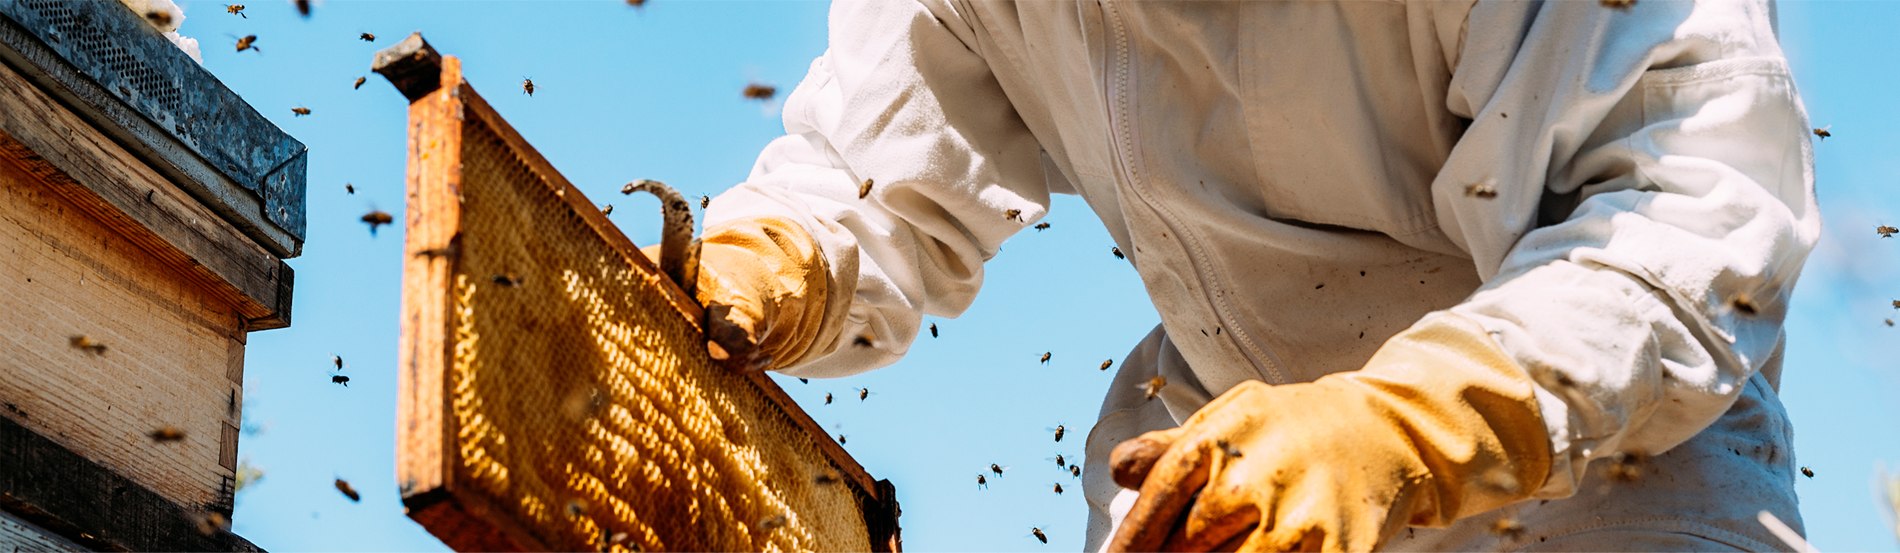 Hantz Honey - a hive of industry Banner